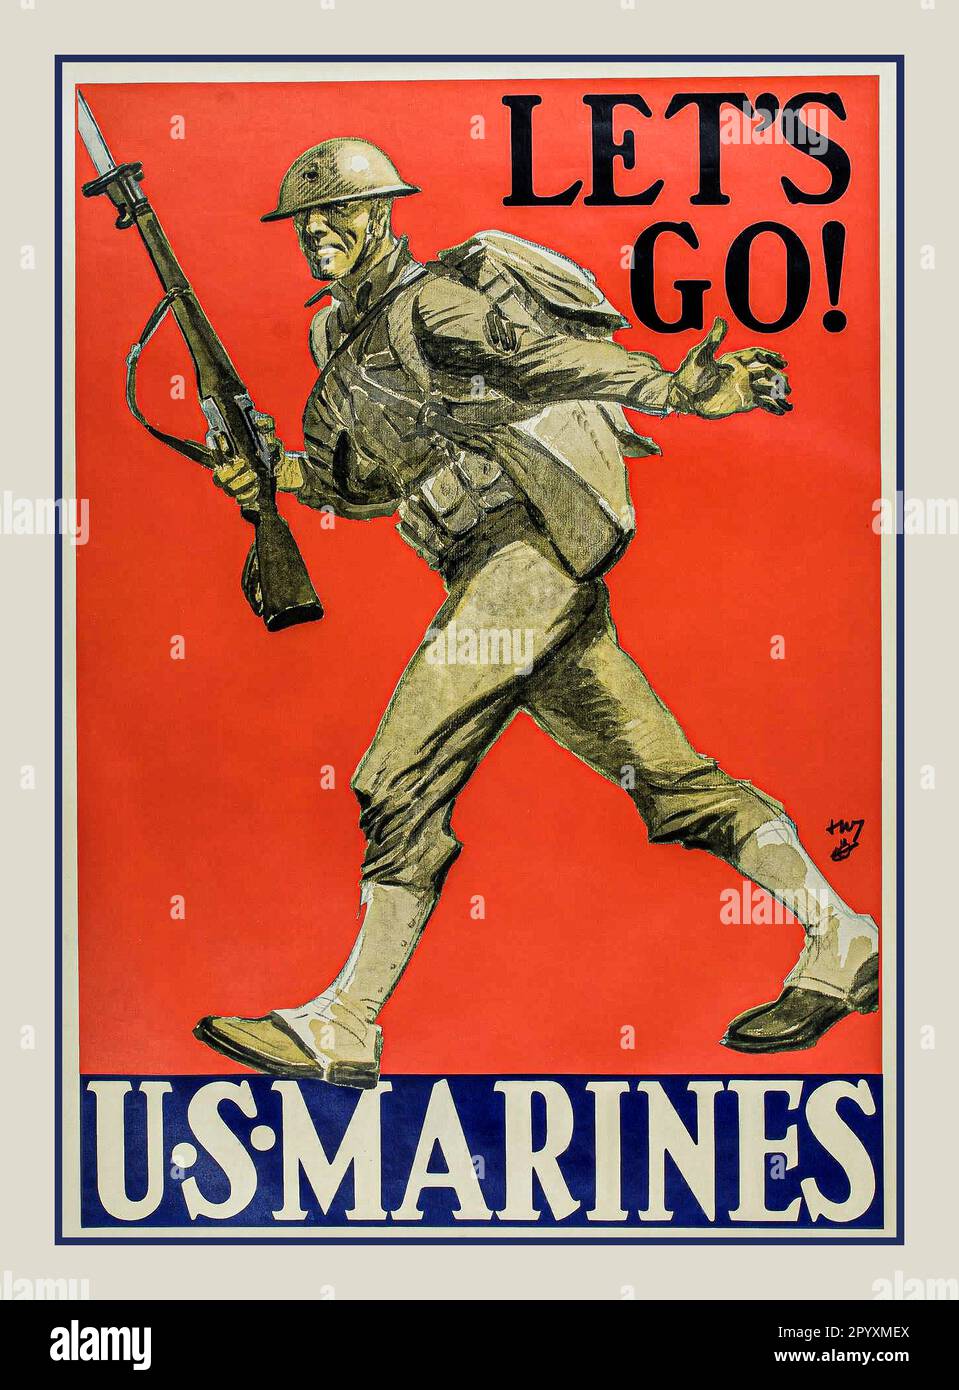 Poster vintage di propaganda in stile retrò dei MARINES statunitensi degli anni '1940 della seconda guerra mondiale, che mostra un marine statunitense con fucile in uniforme, sotto la didascalia "LET'S GO!" E sotto un blocco blu con testo bianco, che recita 'U.S. Marines'. Foto Stock